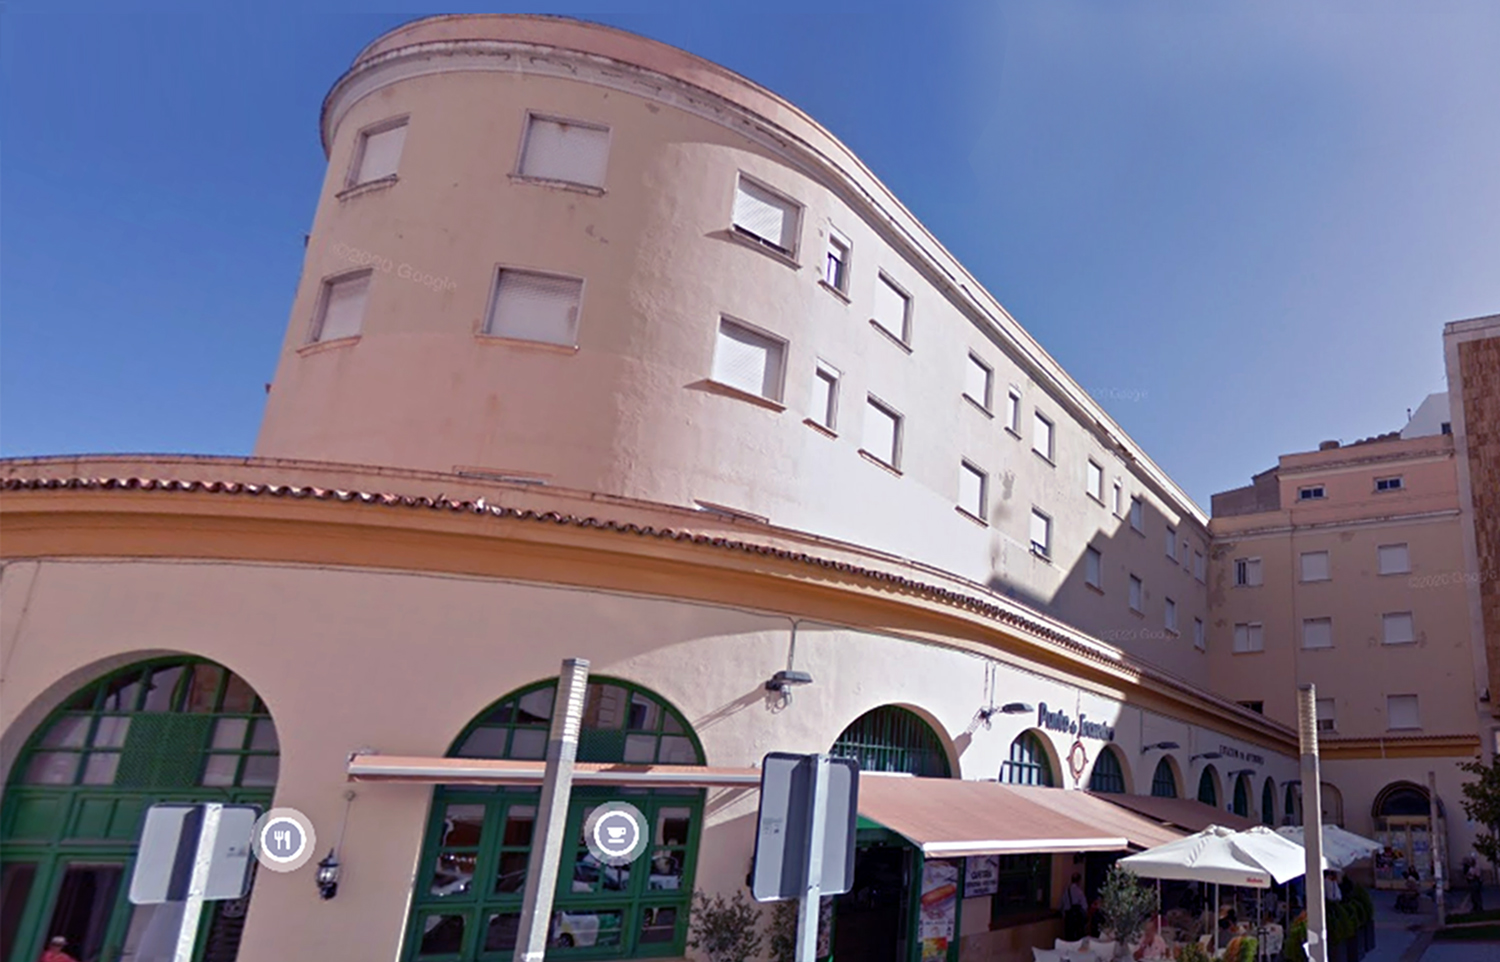 El Hotel Rey Fernando de la estación de autobuses de Jaén volverá a la actividad con 3 3 estrellas, 130 plazas y tras 17 años cerrado